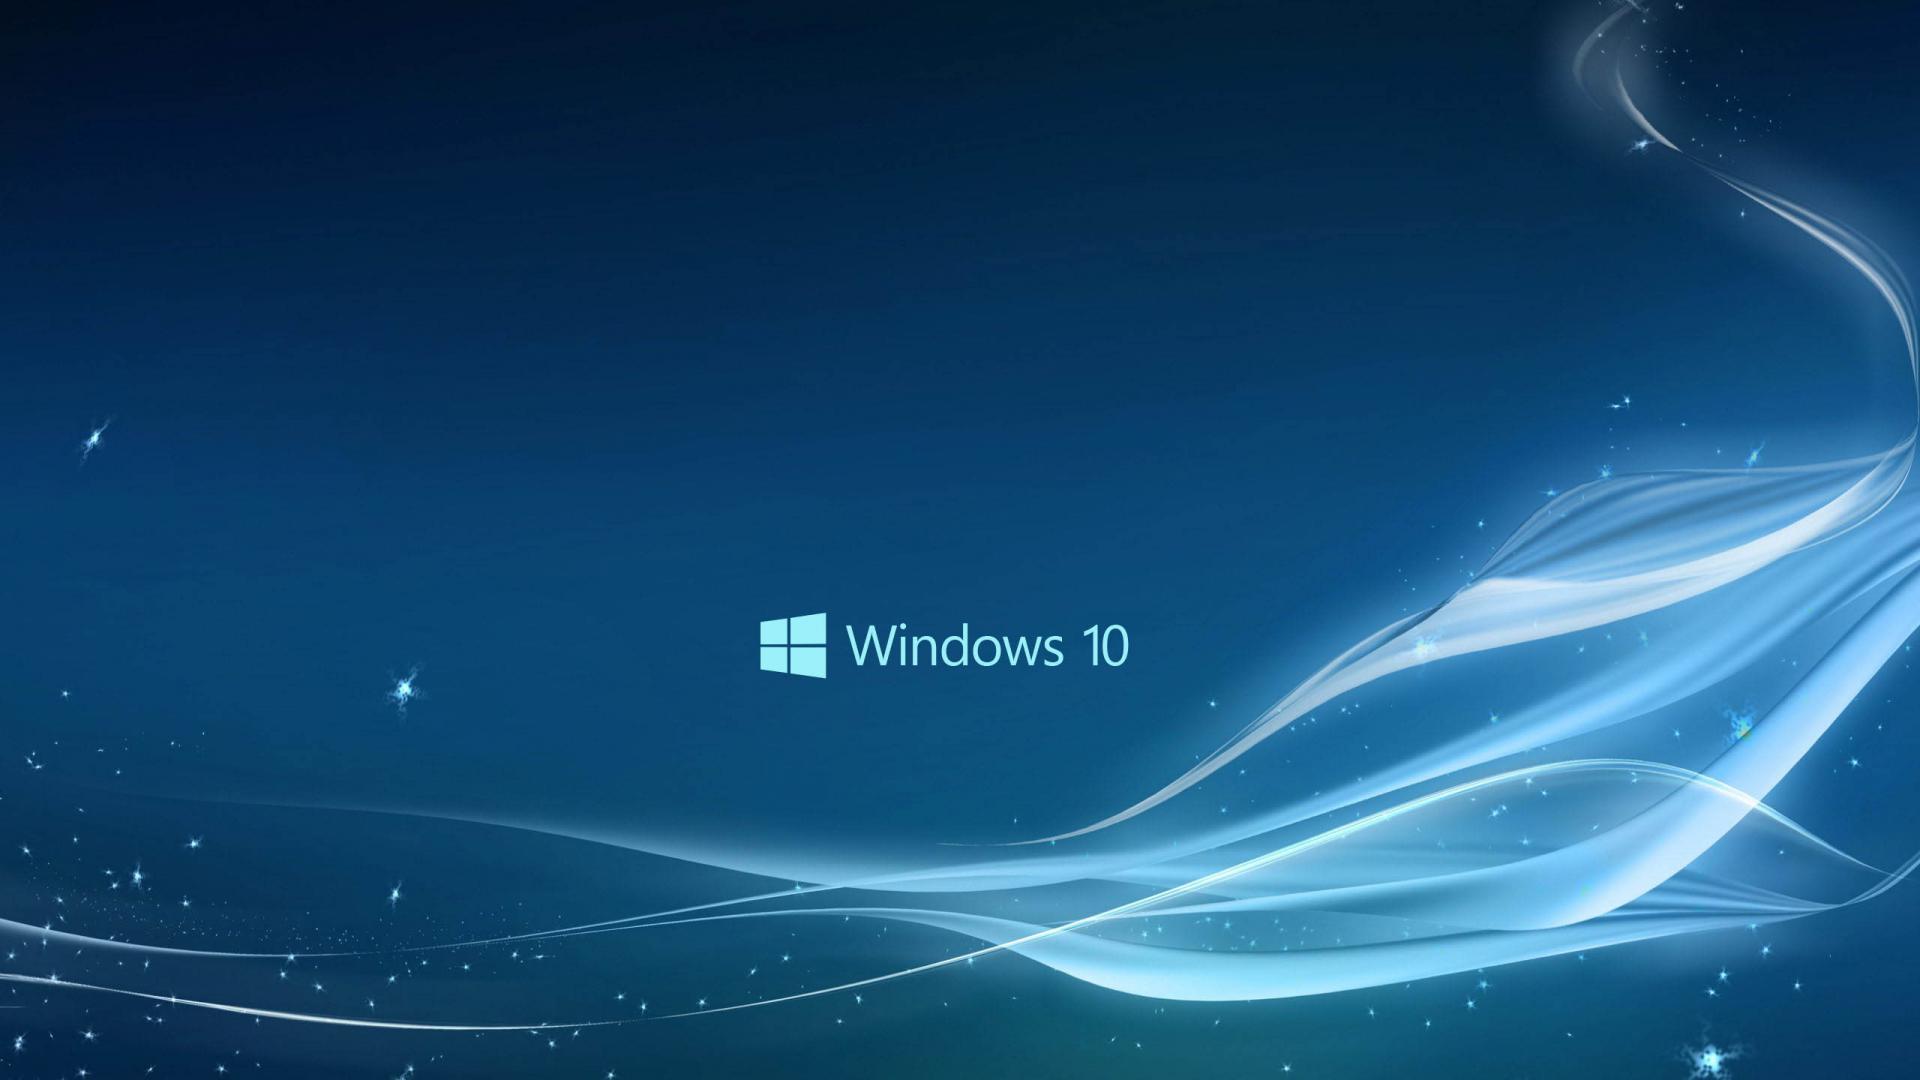 Windows 10, HP Windows 10 HD wallpaper | Pxfuel